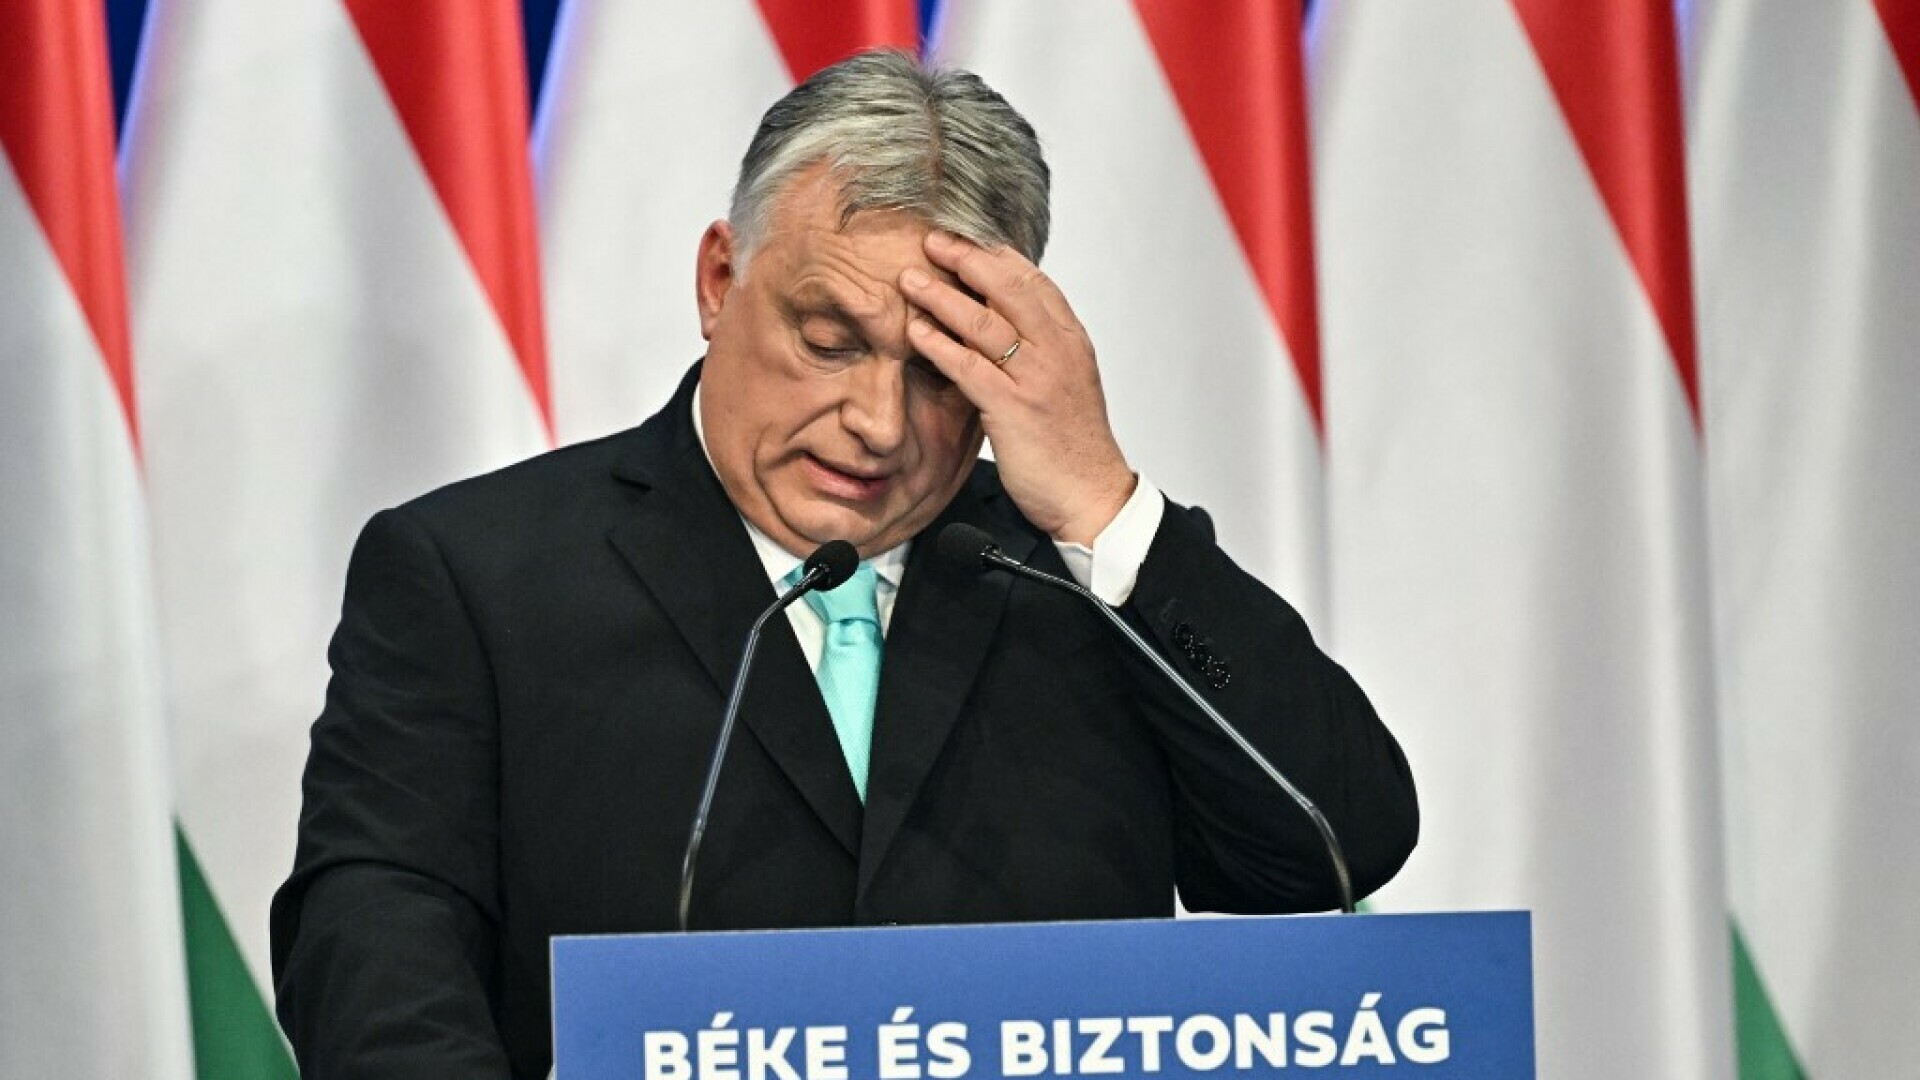 VIDEO Orban potpuno van kontrole na Twitteru stavio isječke Johna Travoltea: “Gdje je novac?”